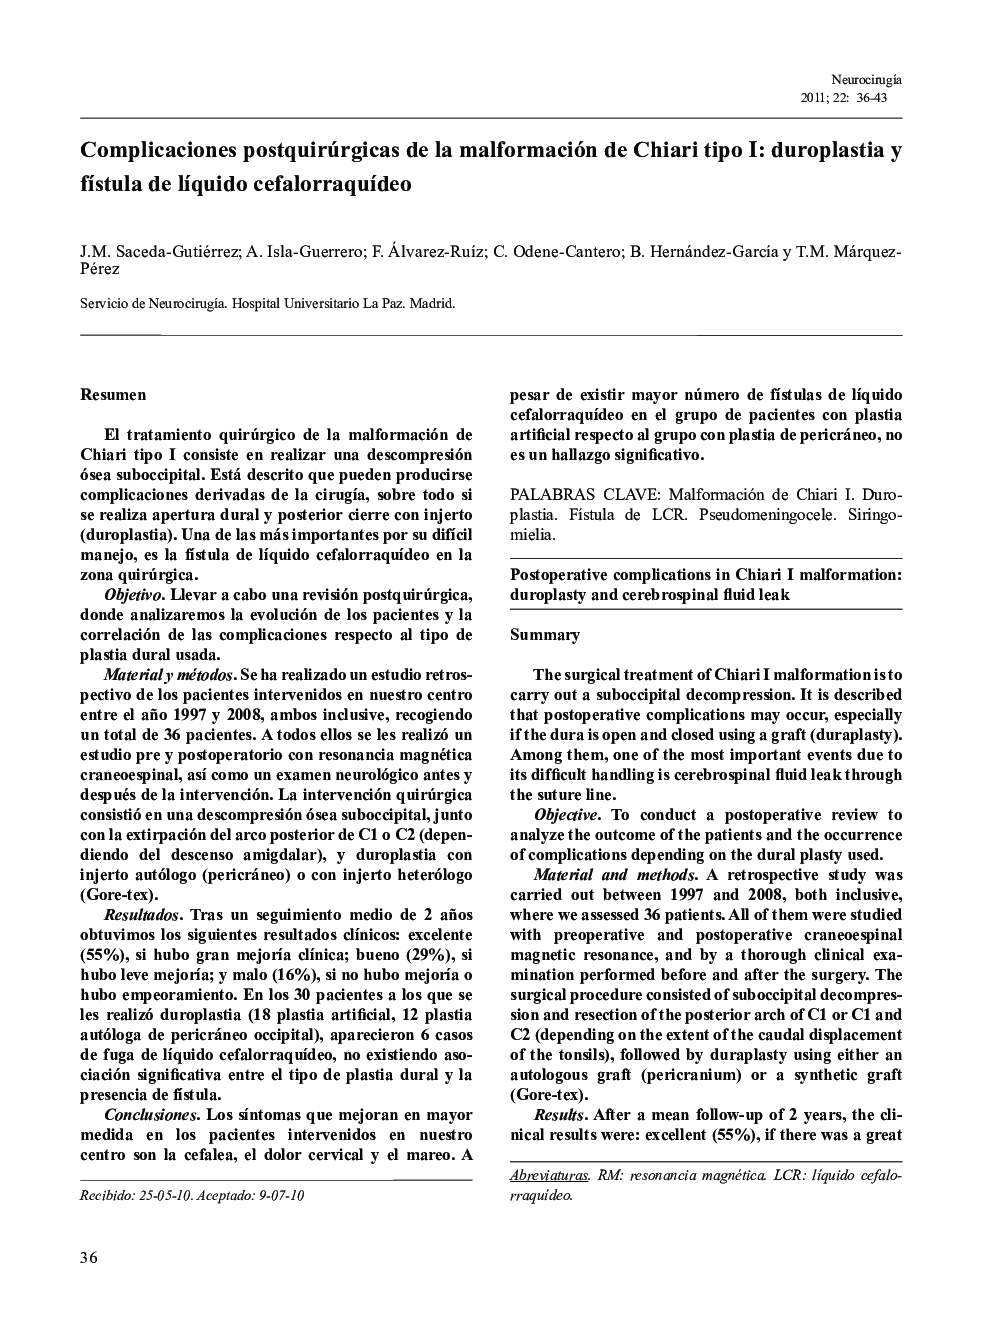 Complicaciones postquirúrgicas de la malformación de Chiari tipo I: duroplastia y fÃ­stula de lÃ­quido cefalorraquÃ­deo